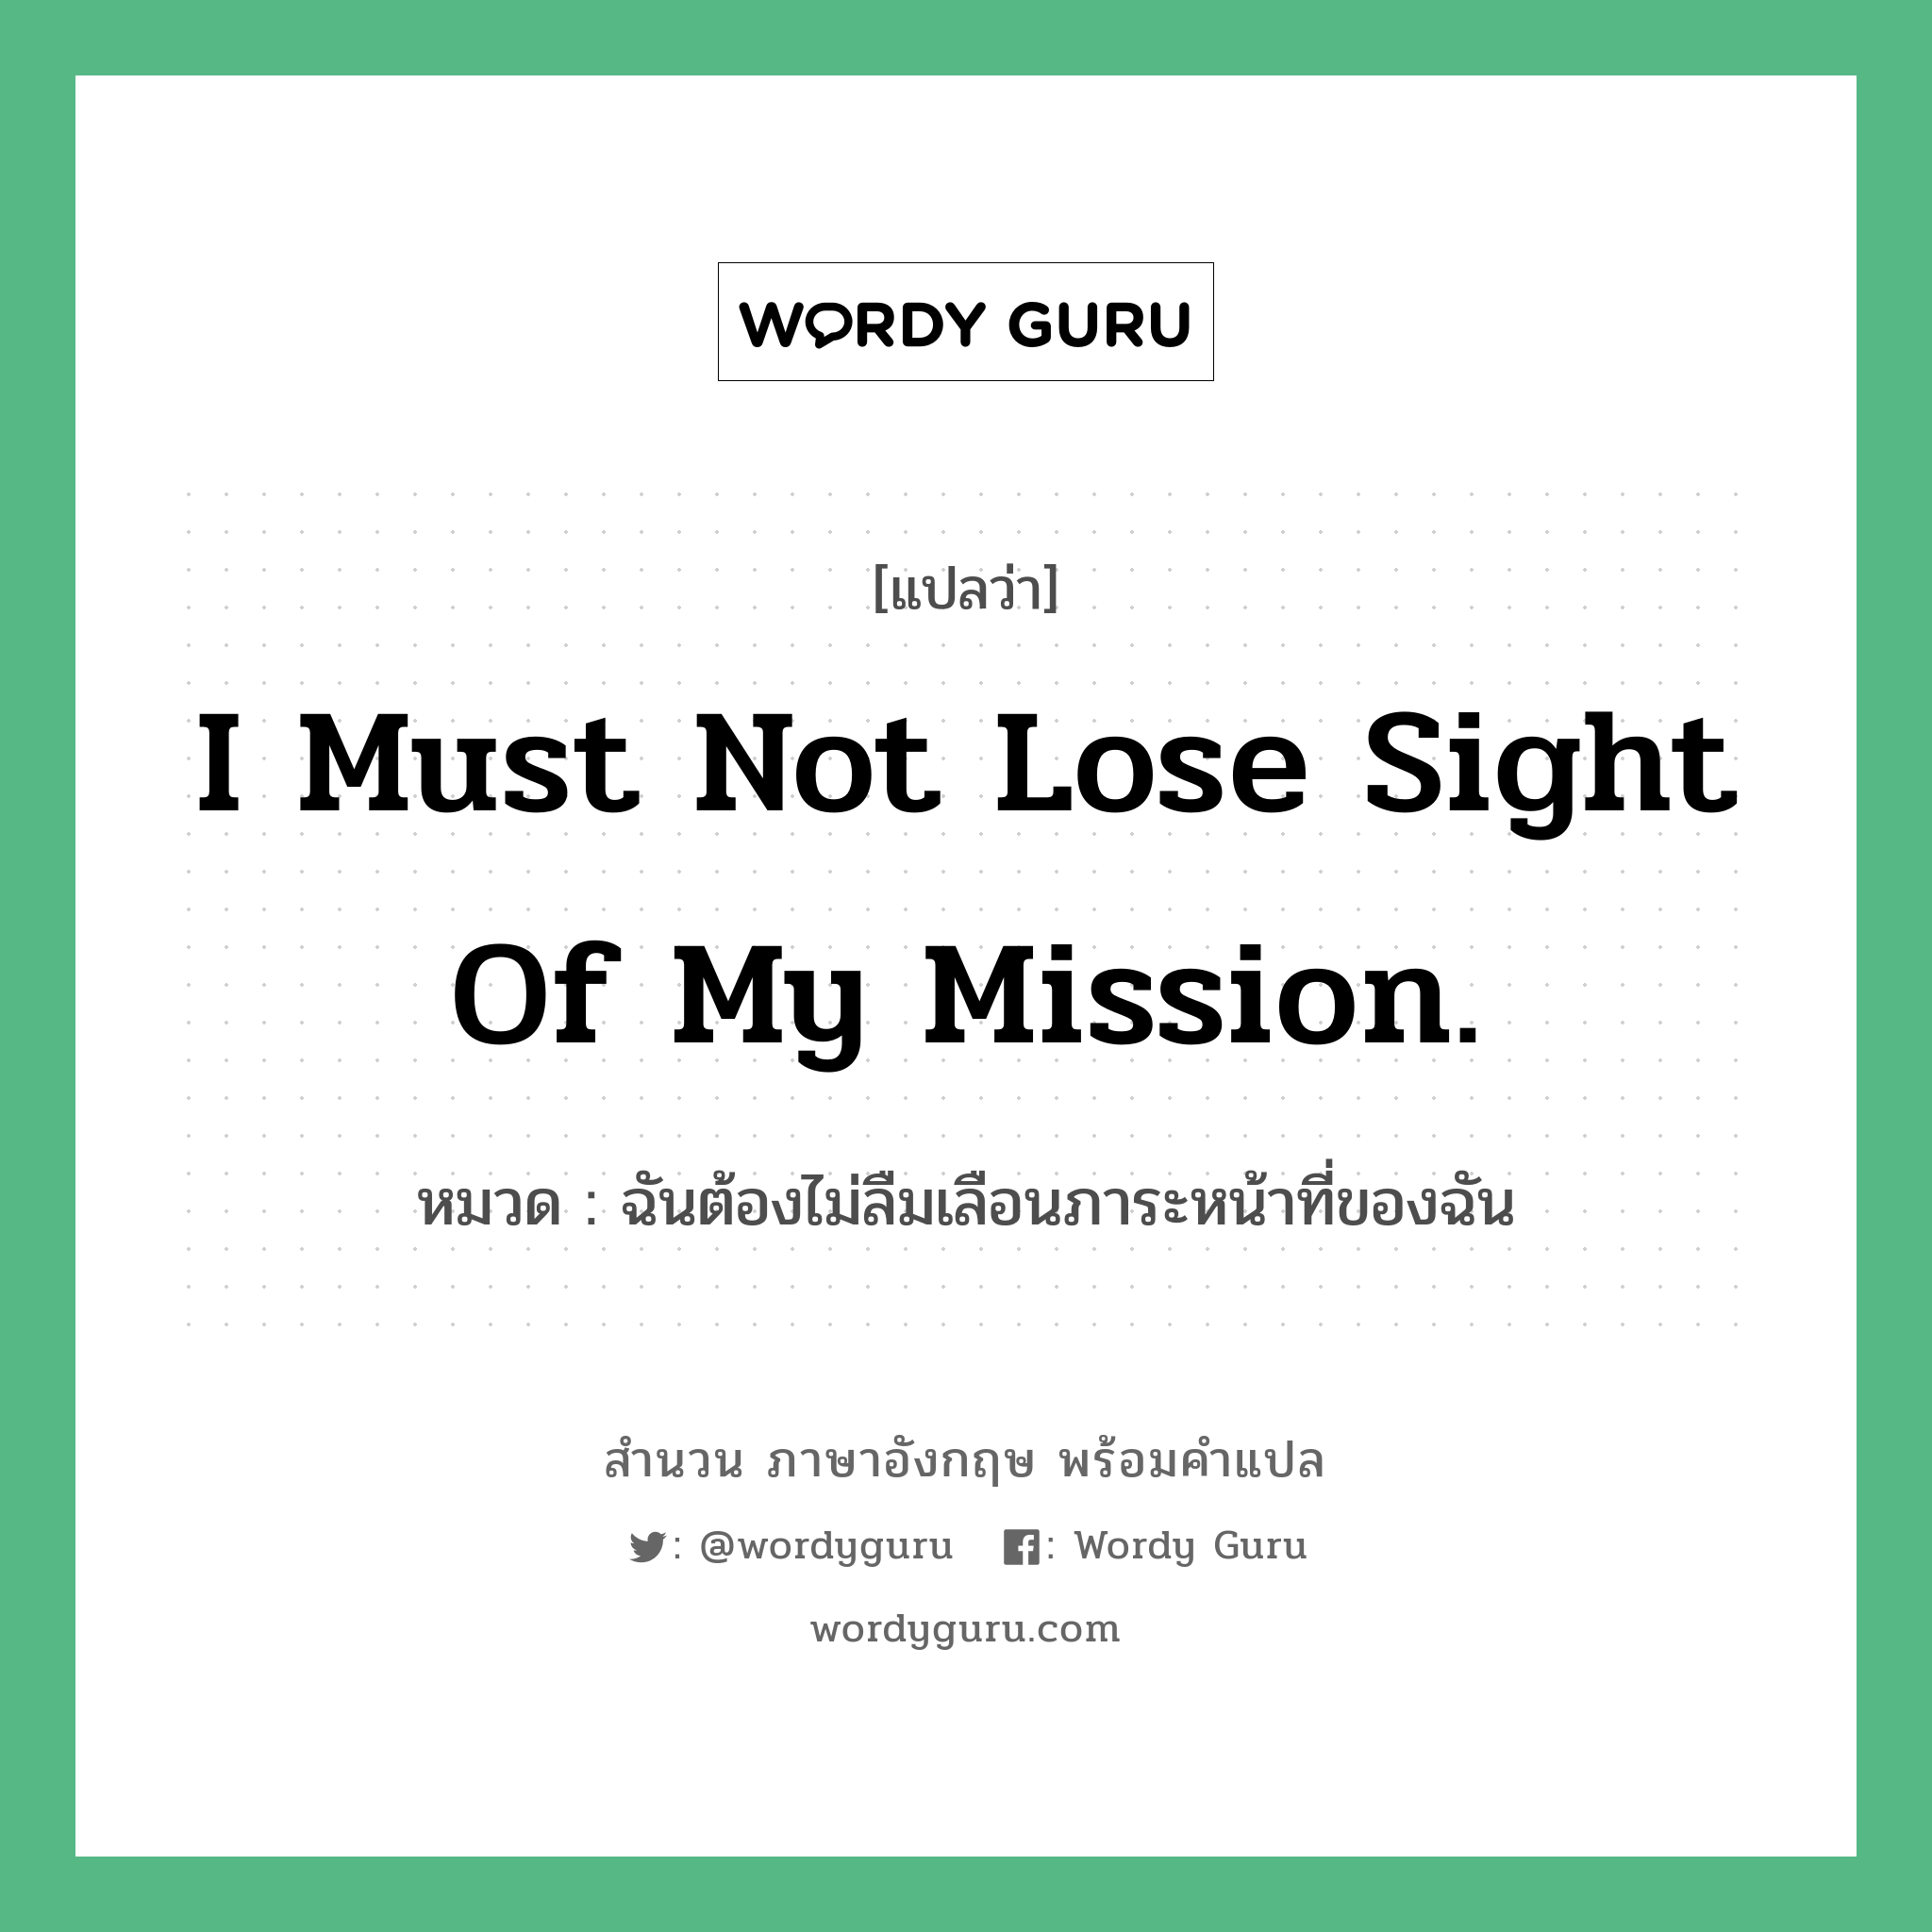 I must not lose sight of my mission. แปลว่า?, สำนวนภาษาอังกฤษ I must not lose sight of my mission. หมวด ฉันต้องไม่ลืมเลือนภาระหน้าที่ของฉัน